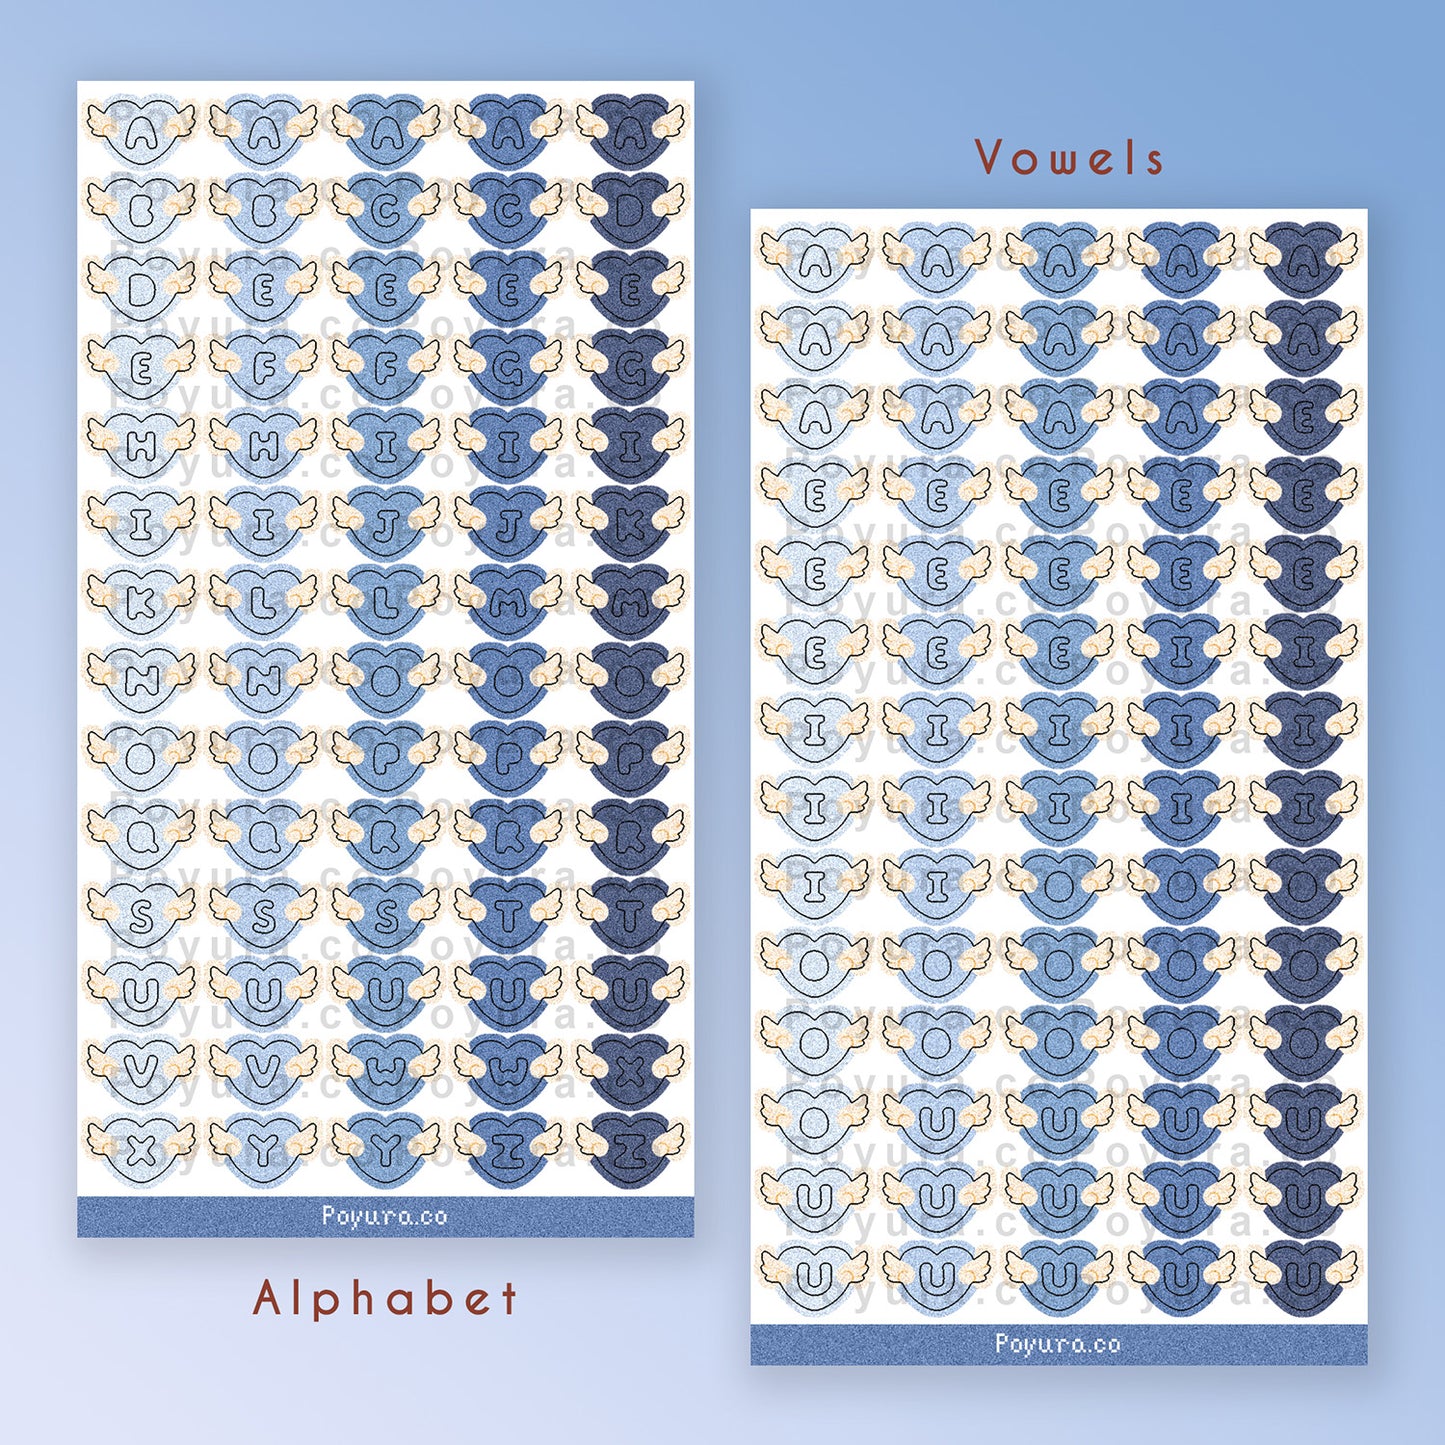 Angel Heart Alphabet Sticker Sheet